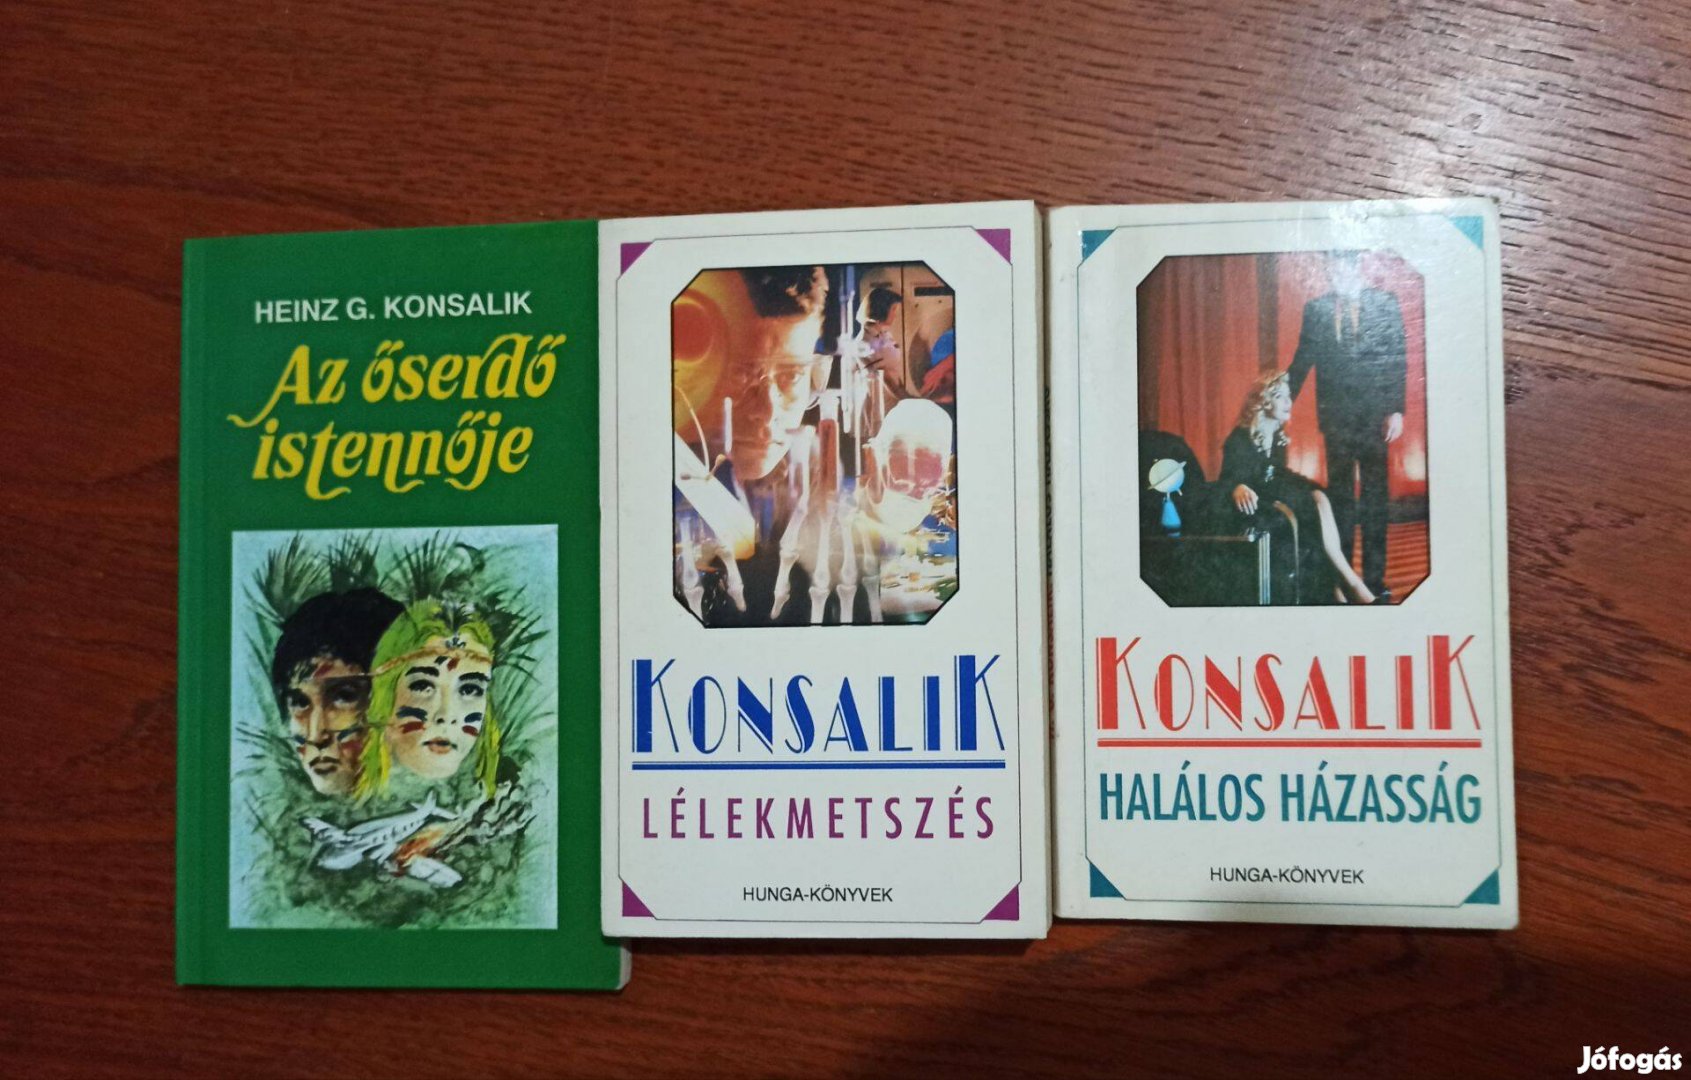 Heinz G. Konsalik könyvek